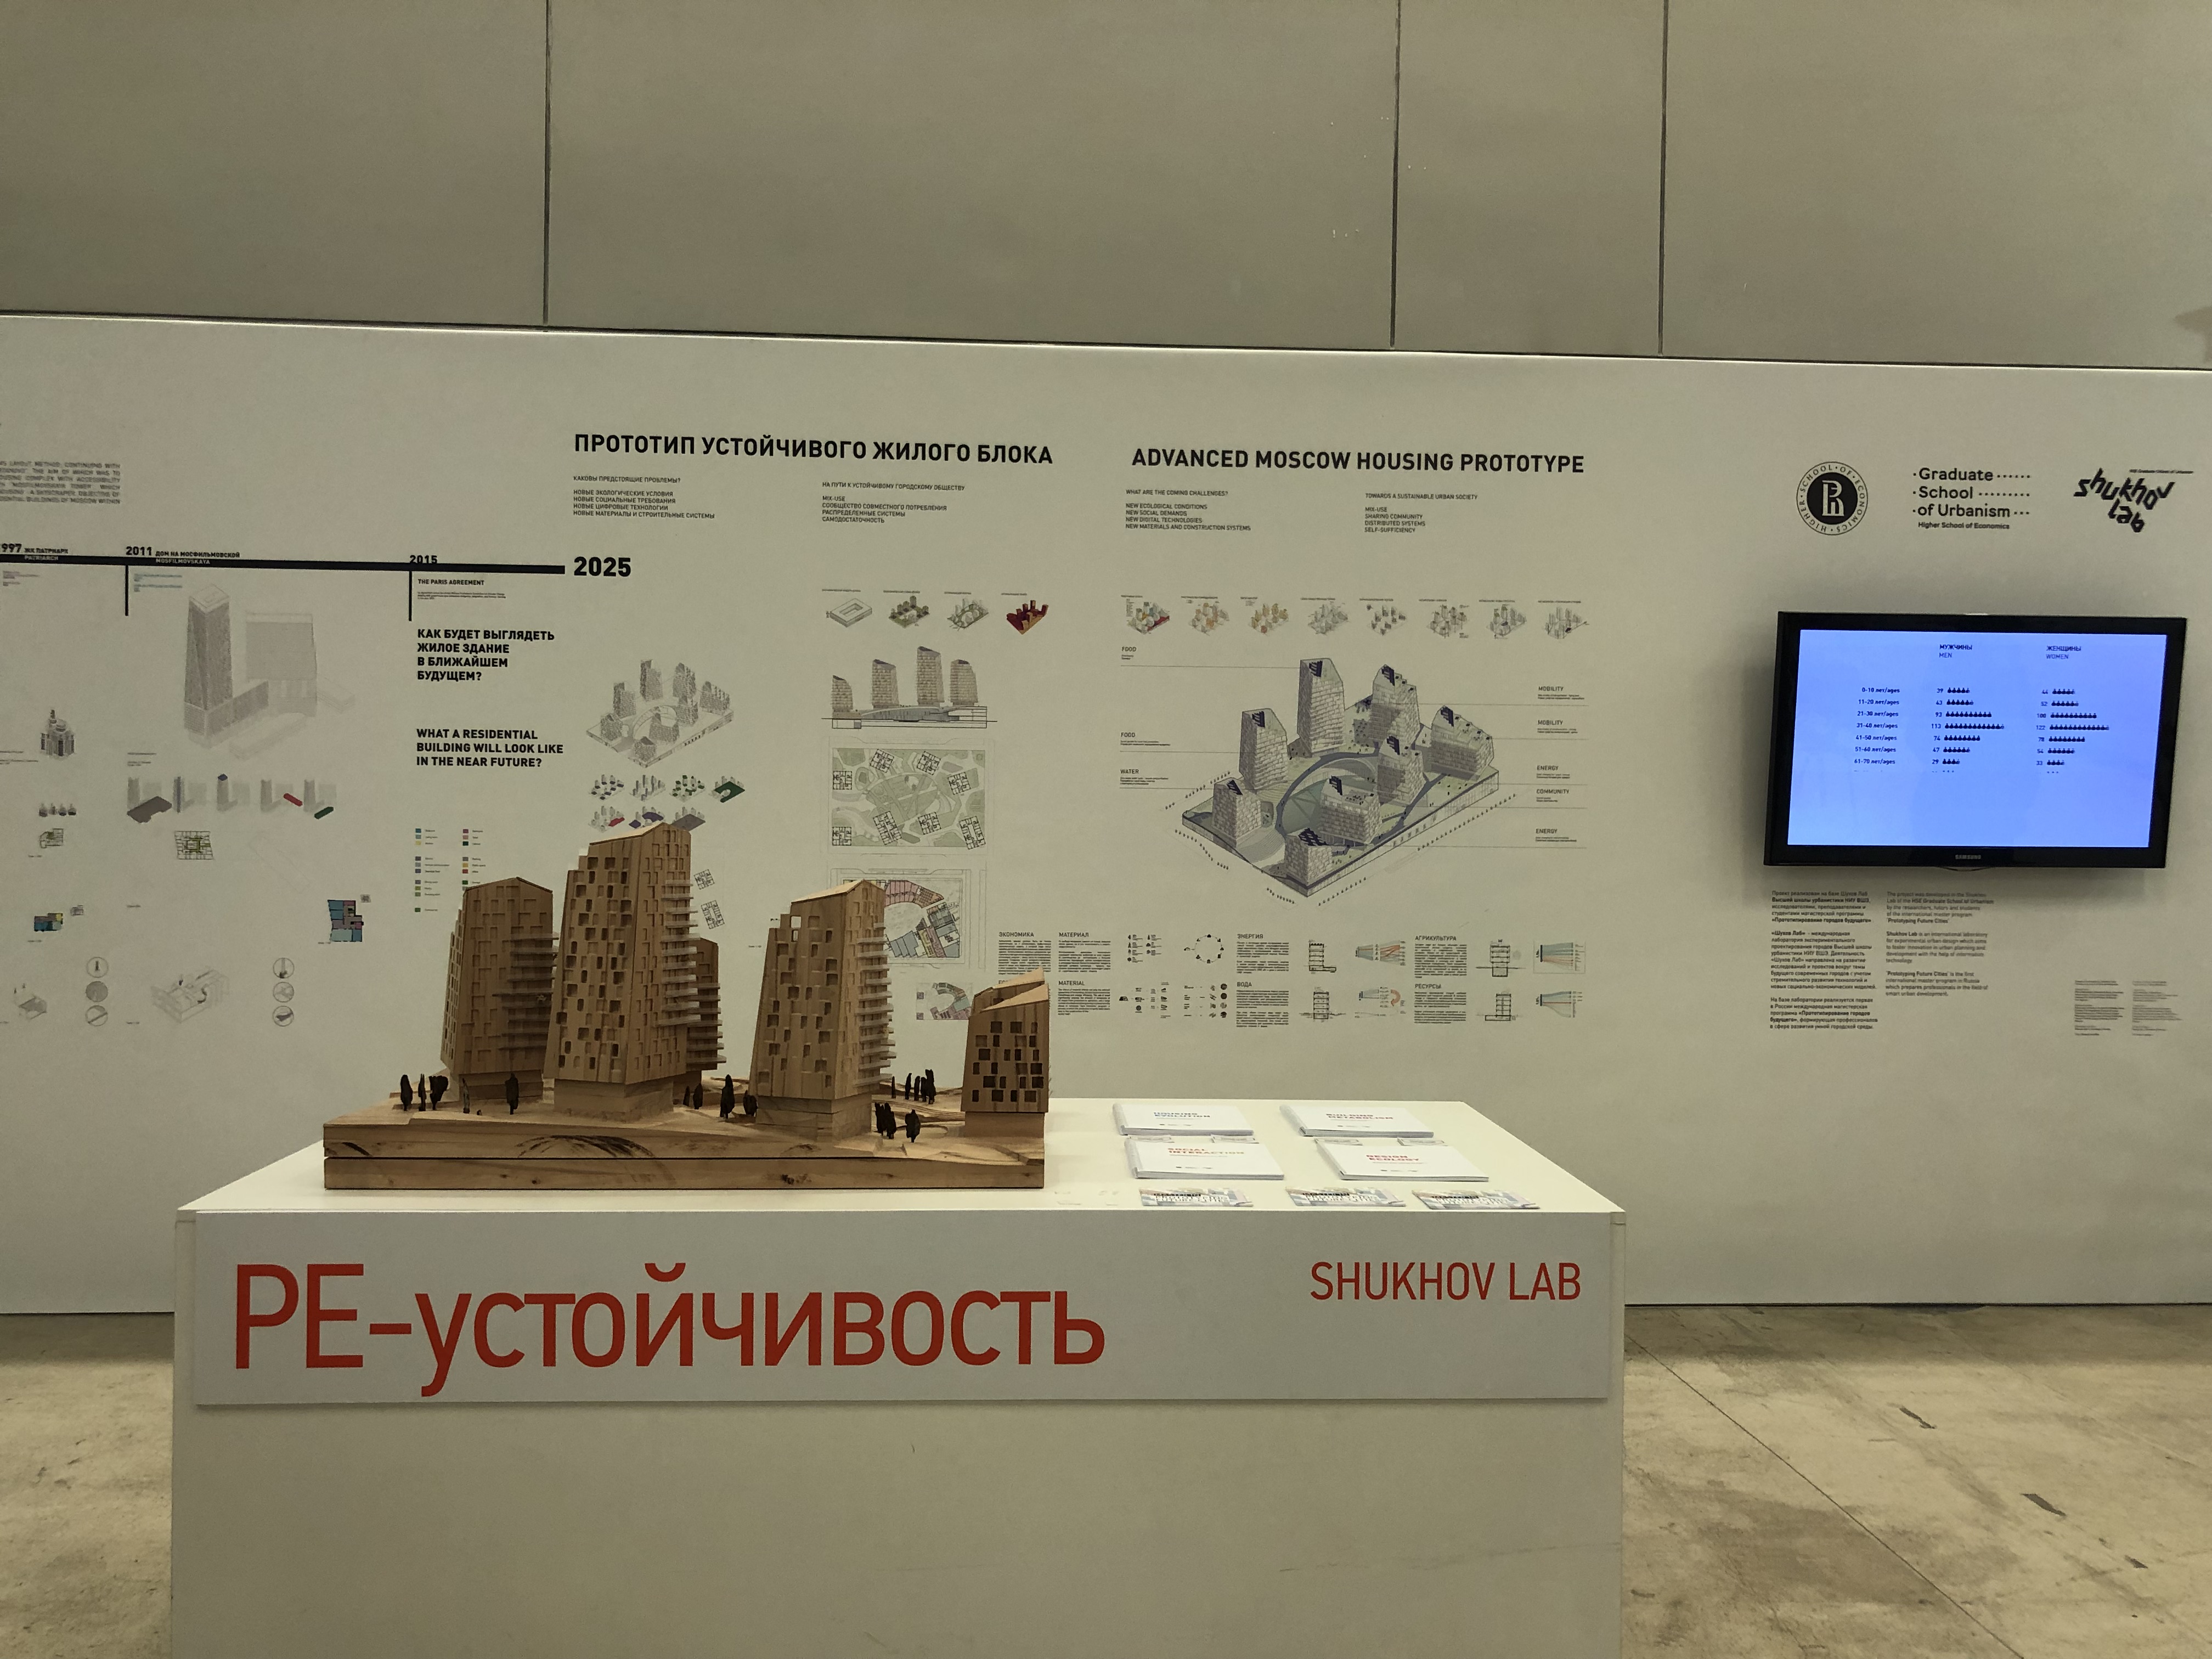 Модель устойчивого жилого блока Шухов Лаб